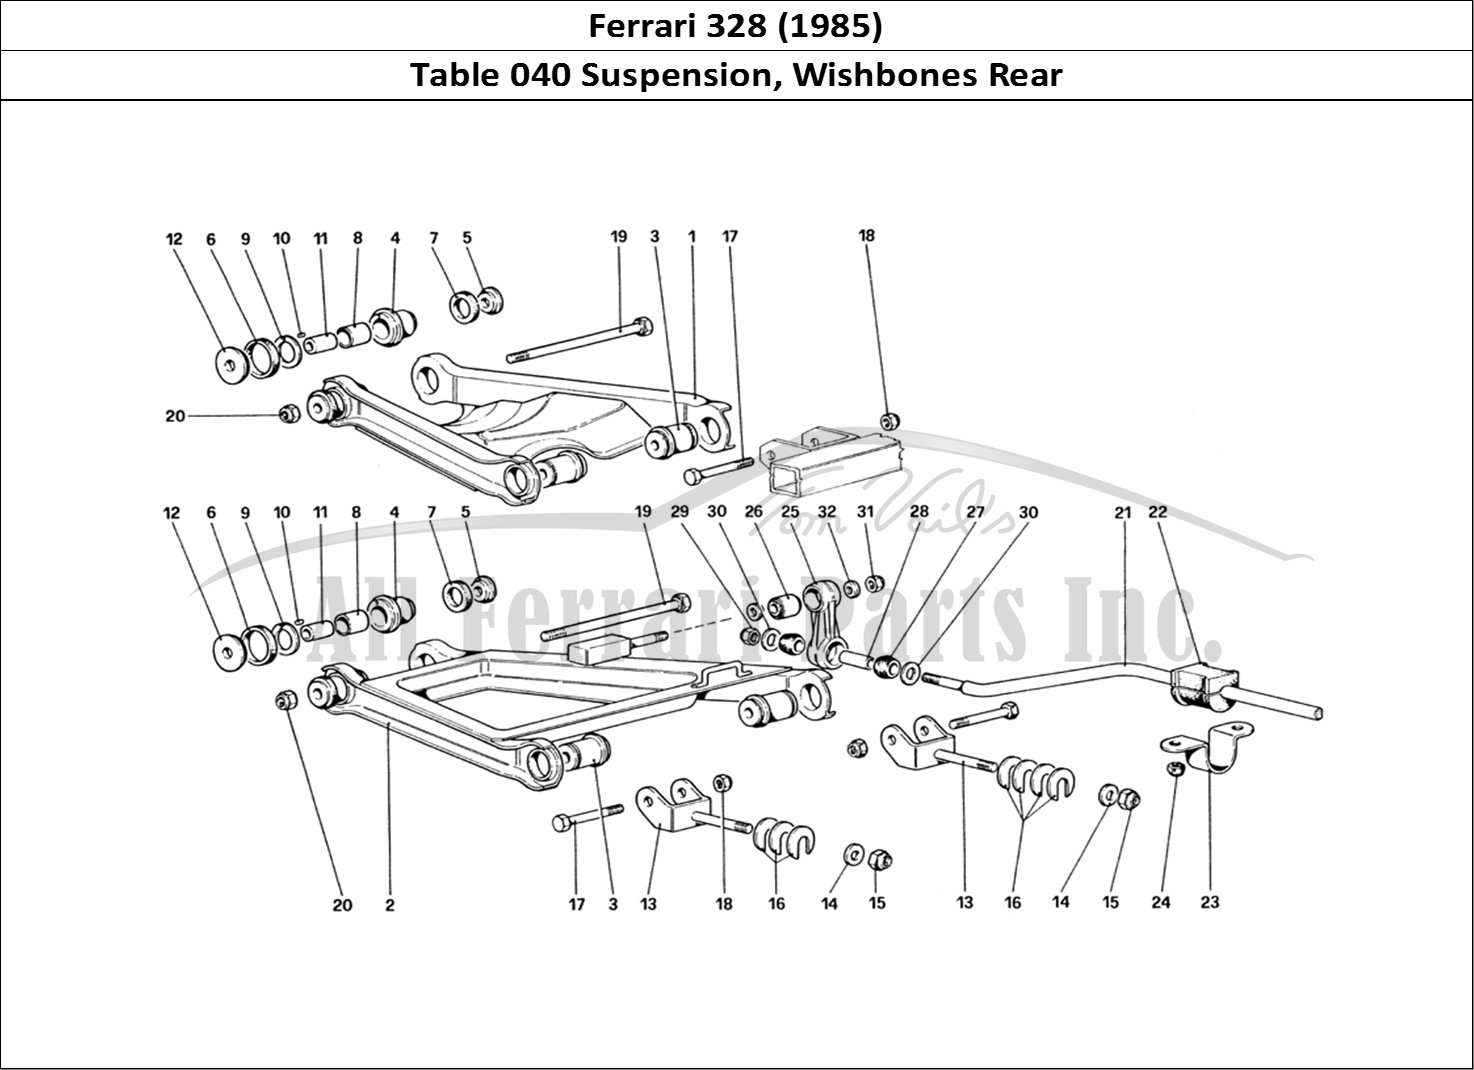 Ferrari Parts Ferrari 328 (1985) Page 040 Rear Suspension - Wishbon